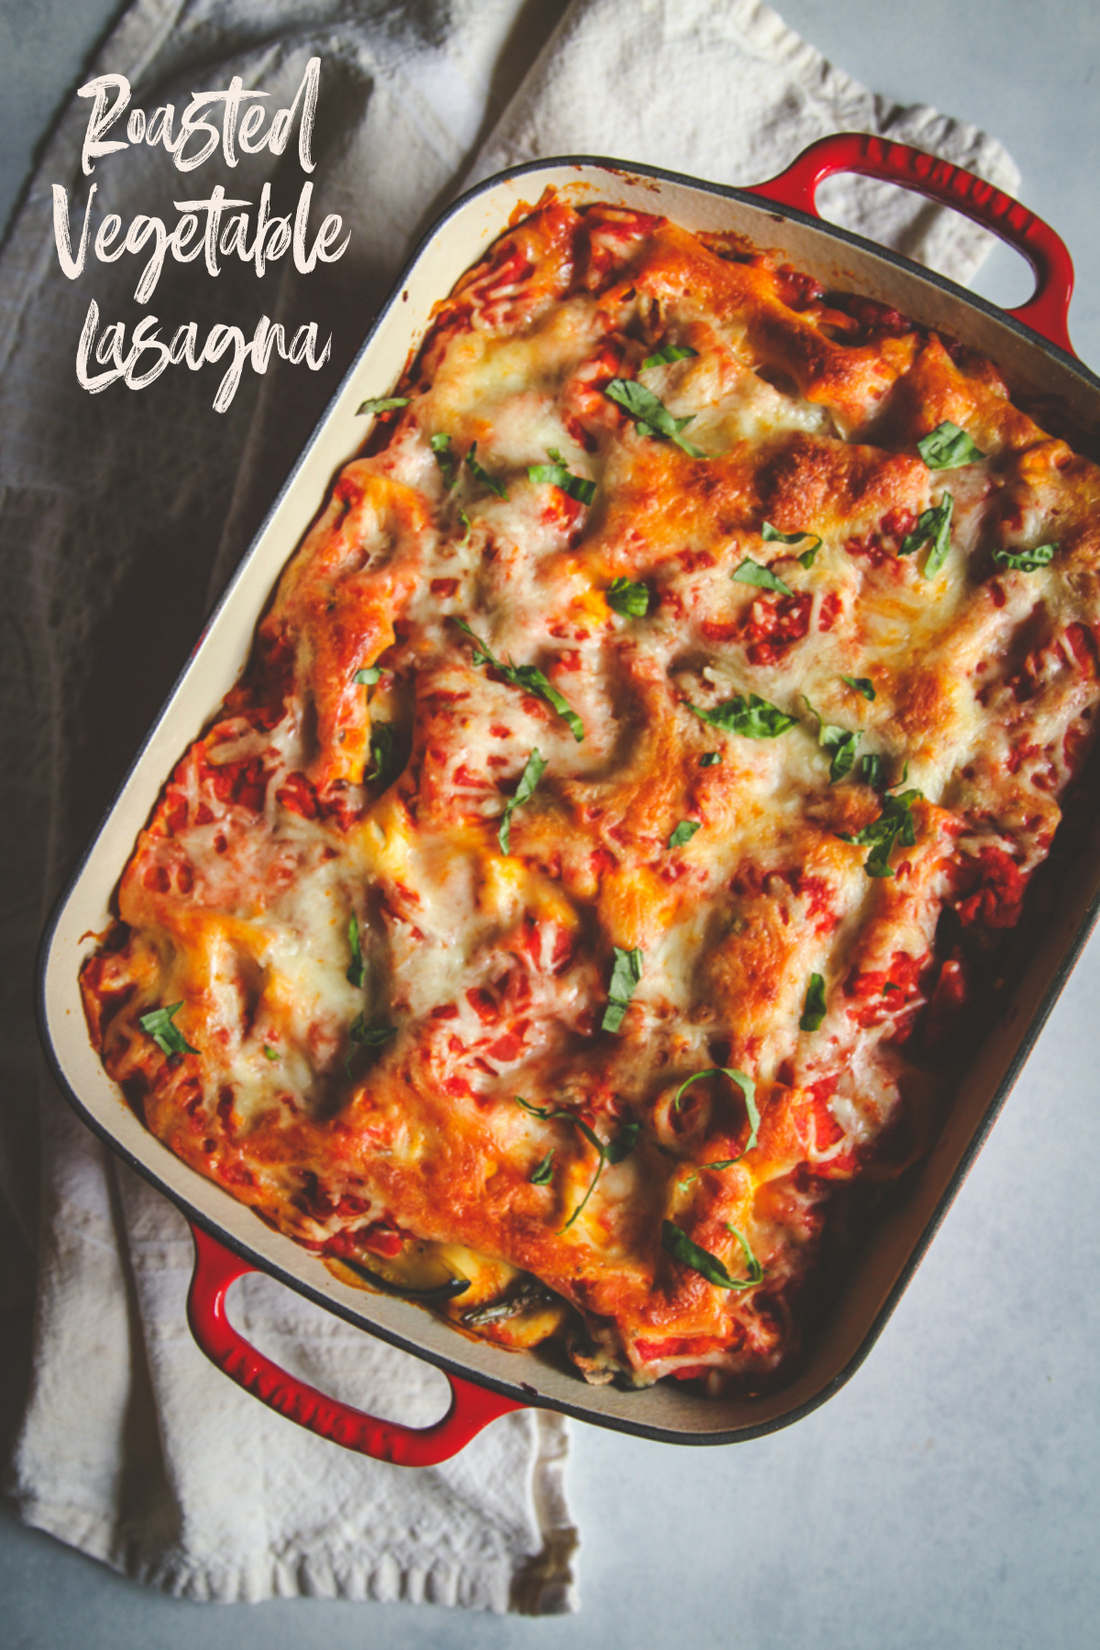 Summer Roasted Vegetable Lasagna